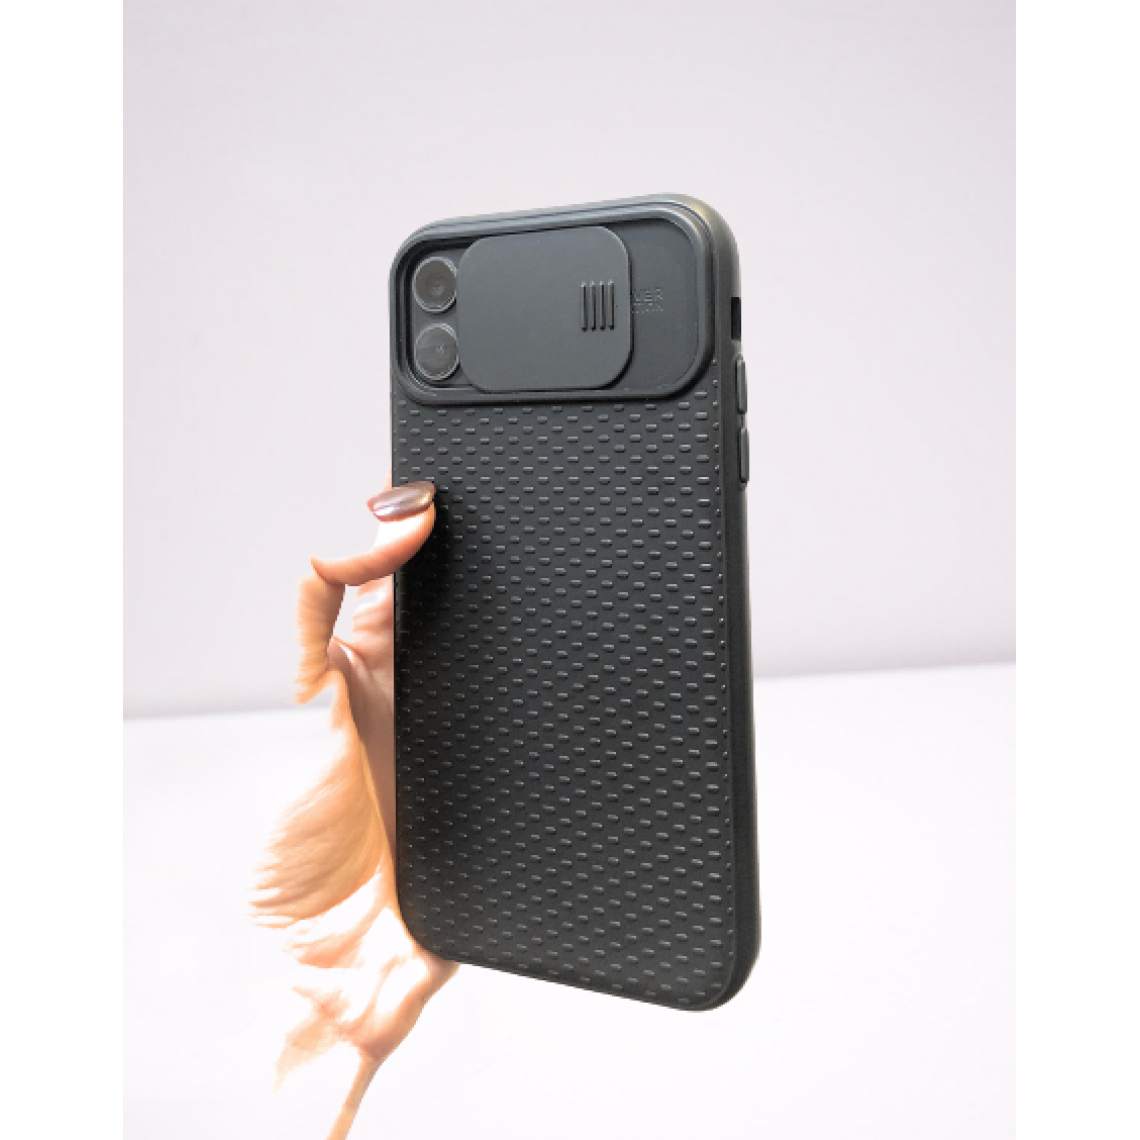 Cabling - CABLING®Coque luxe pour iPhone 11 avec Cache Caméra Coulissant, Protection en Silicone Gel Soft-touch - Noir - Coque, étui smartphone